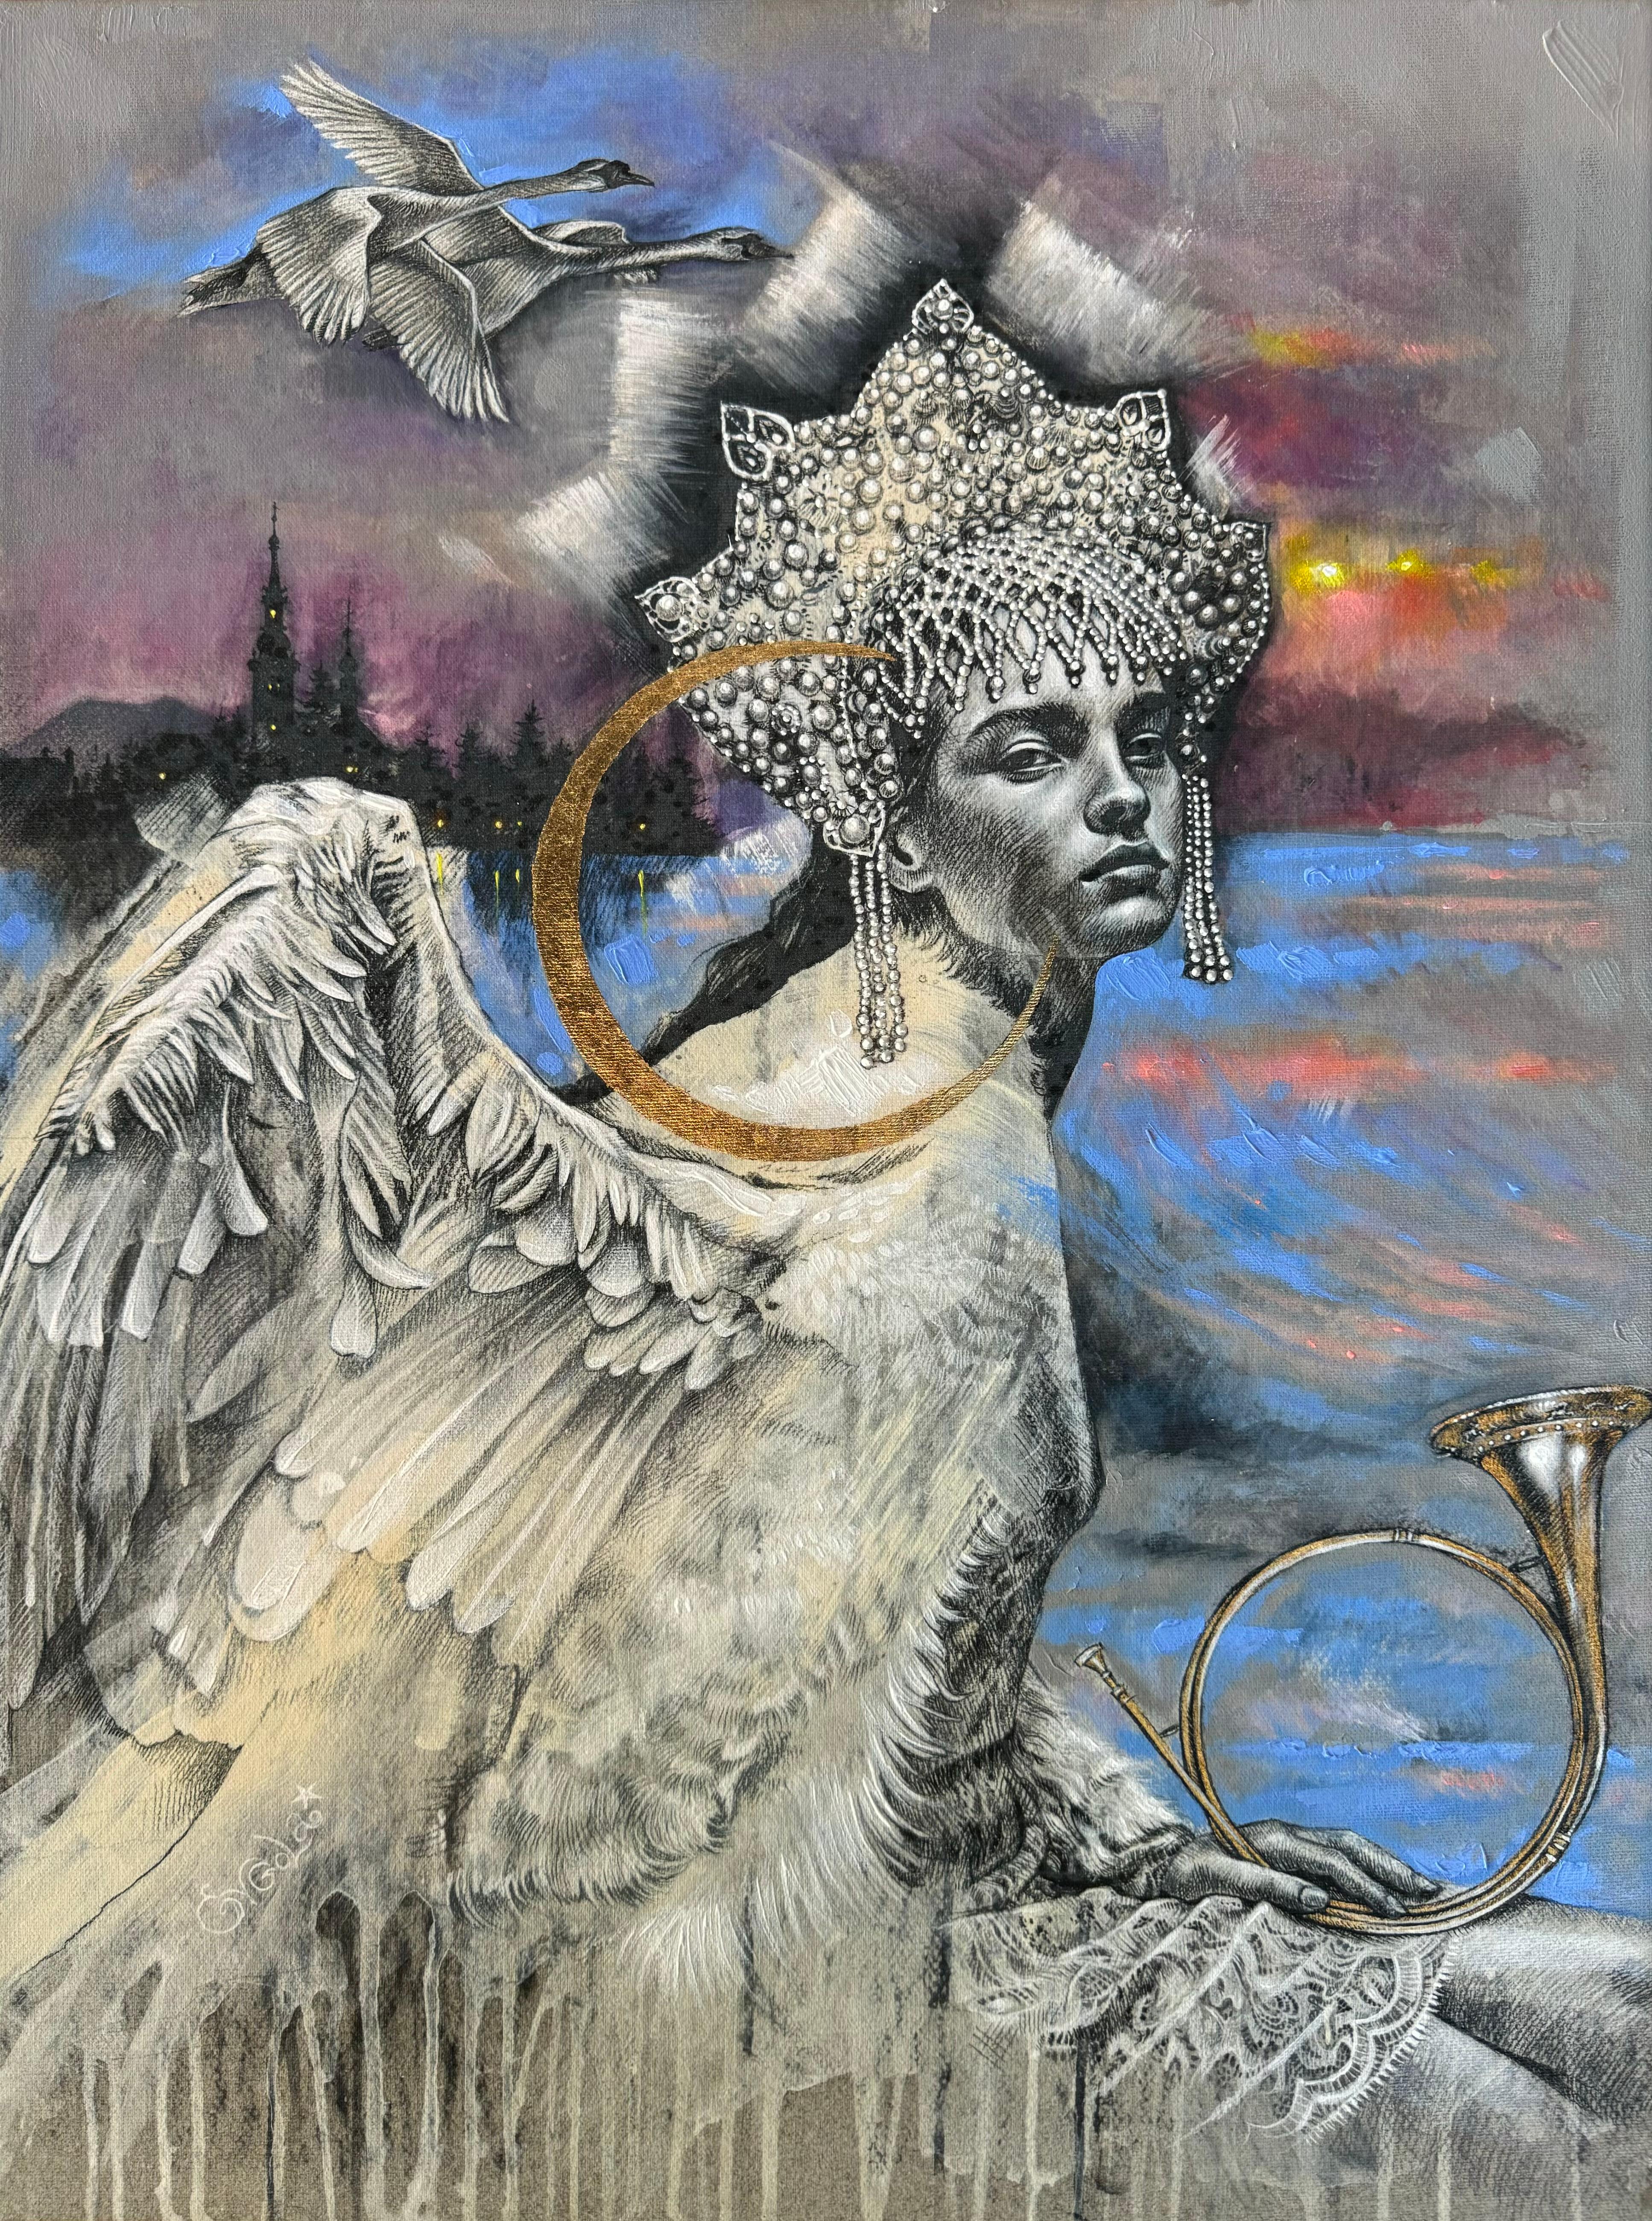 Evgeniya Golik  Figurative Print - Magic Realism Figurative Artwork, "Swan Song" by Evgeniya Golik